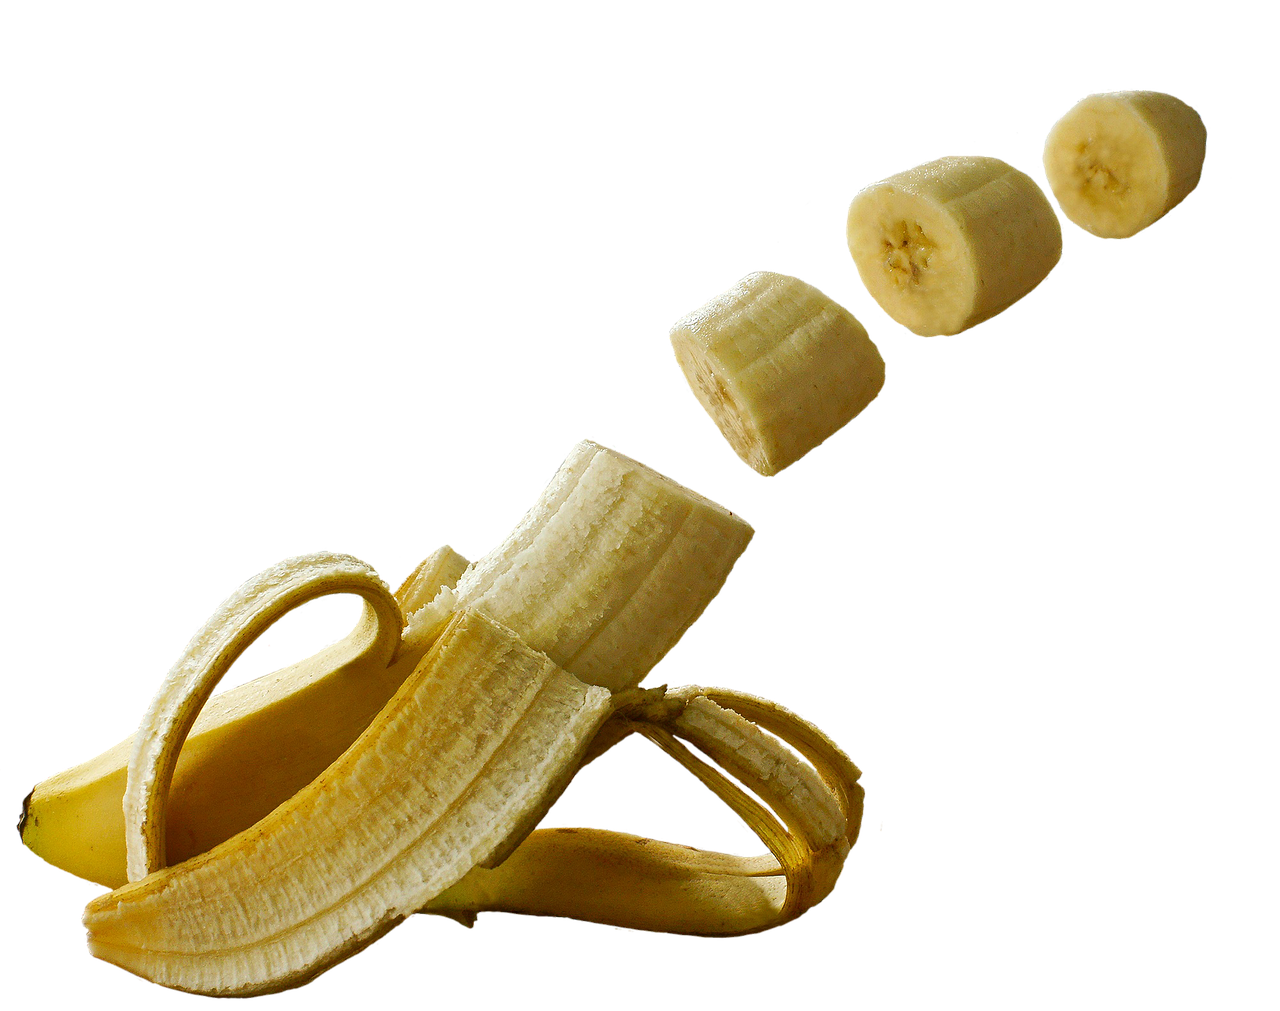 Bananas, Vaisiai, Manipuliavimas, Studija, Geltona, Sveikas, Maistas, Lukštas, Skanus, Vitaminai